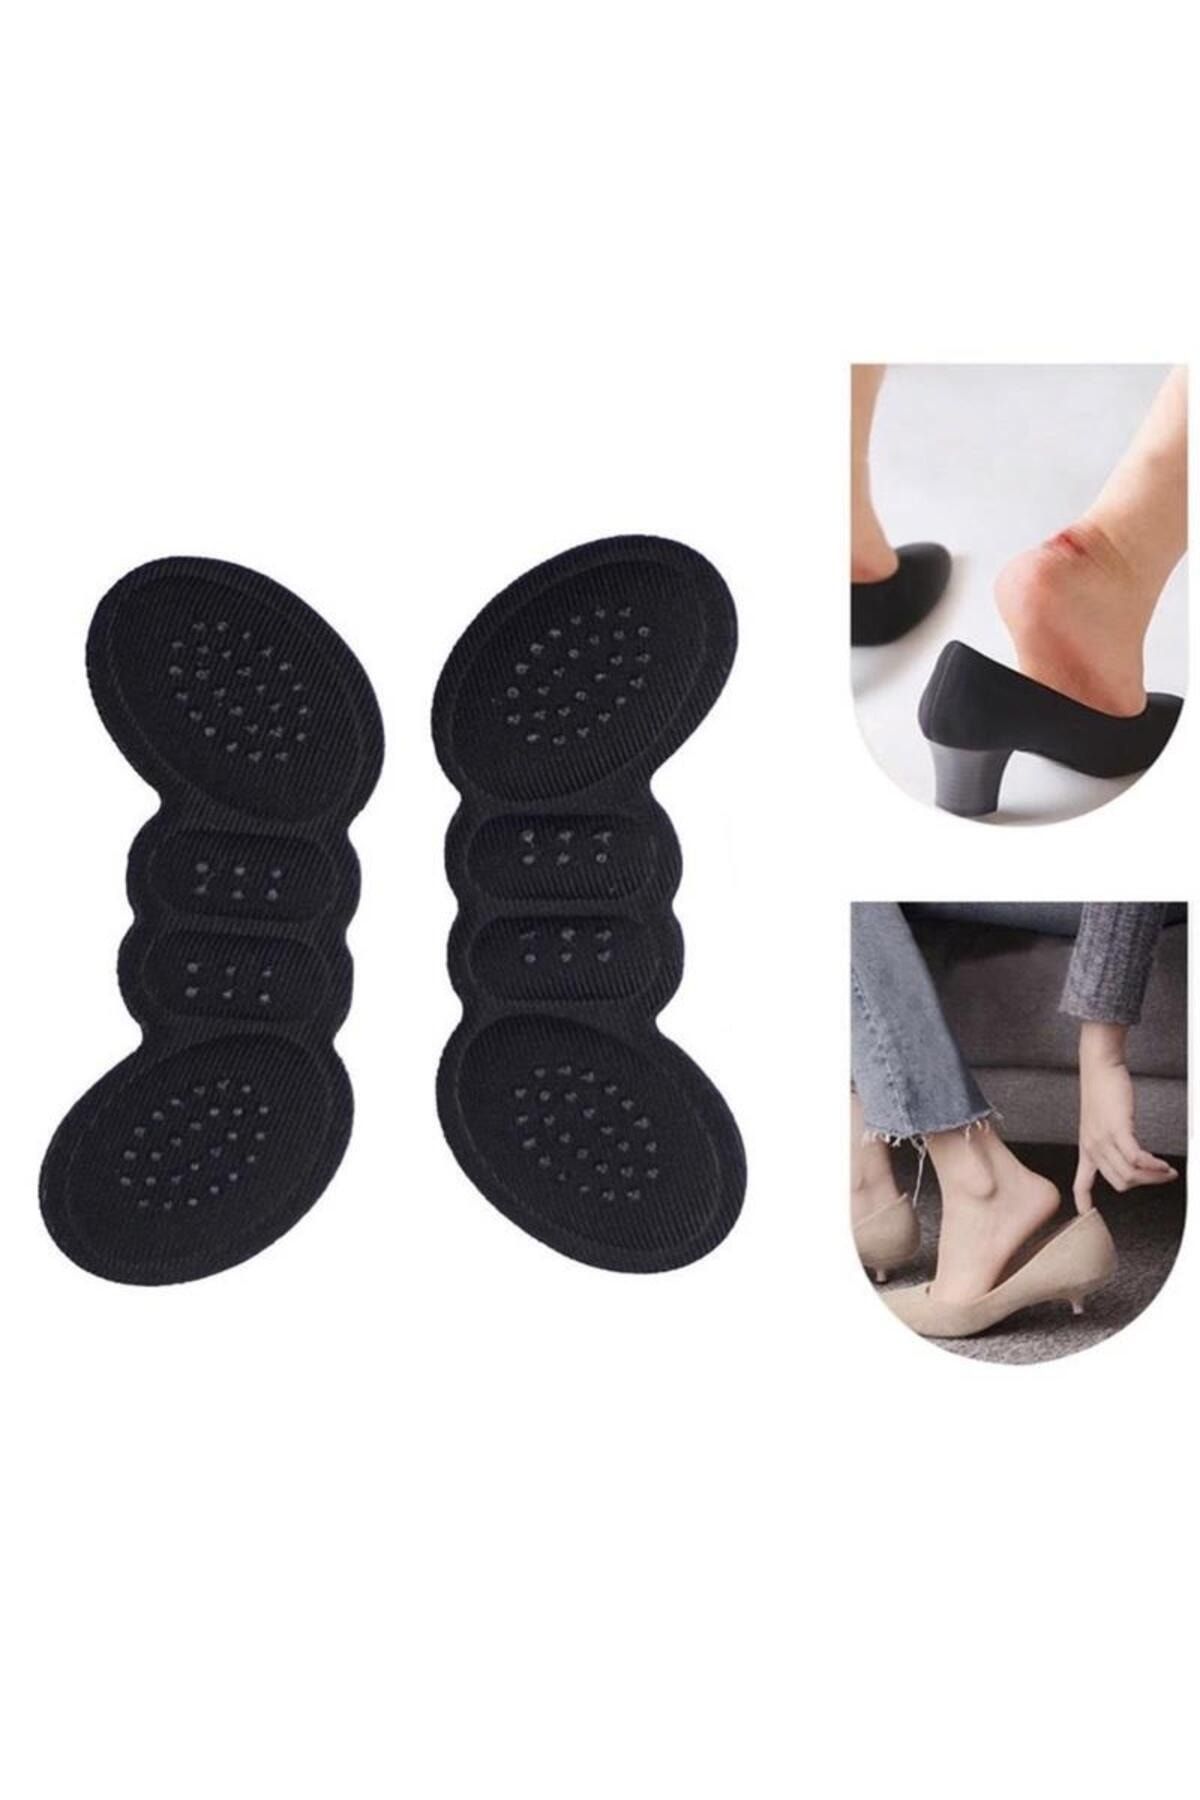 Bunyon 3 mm Siyah Ayakkabı Daraltan Ped Ayak Topuk Vurma Önleyici Sünger